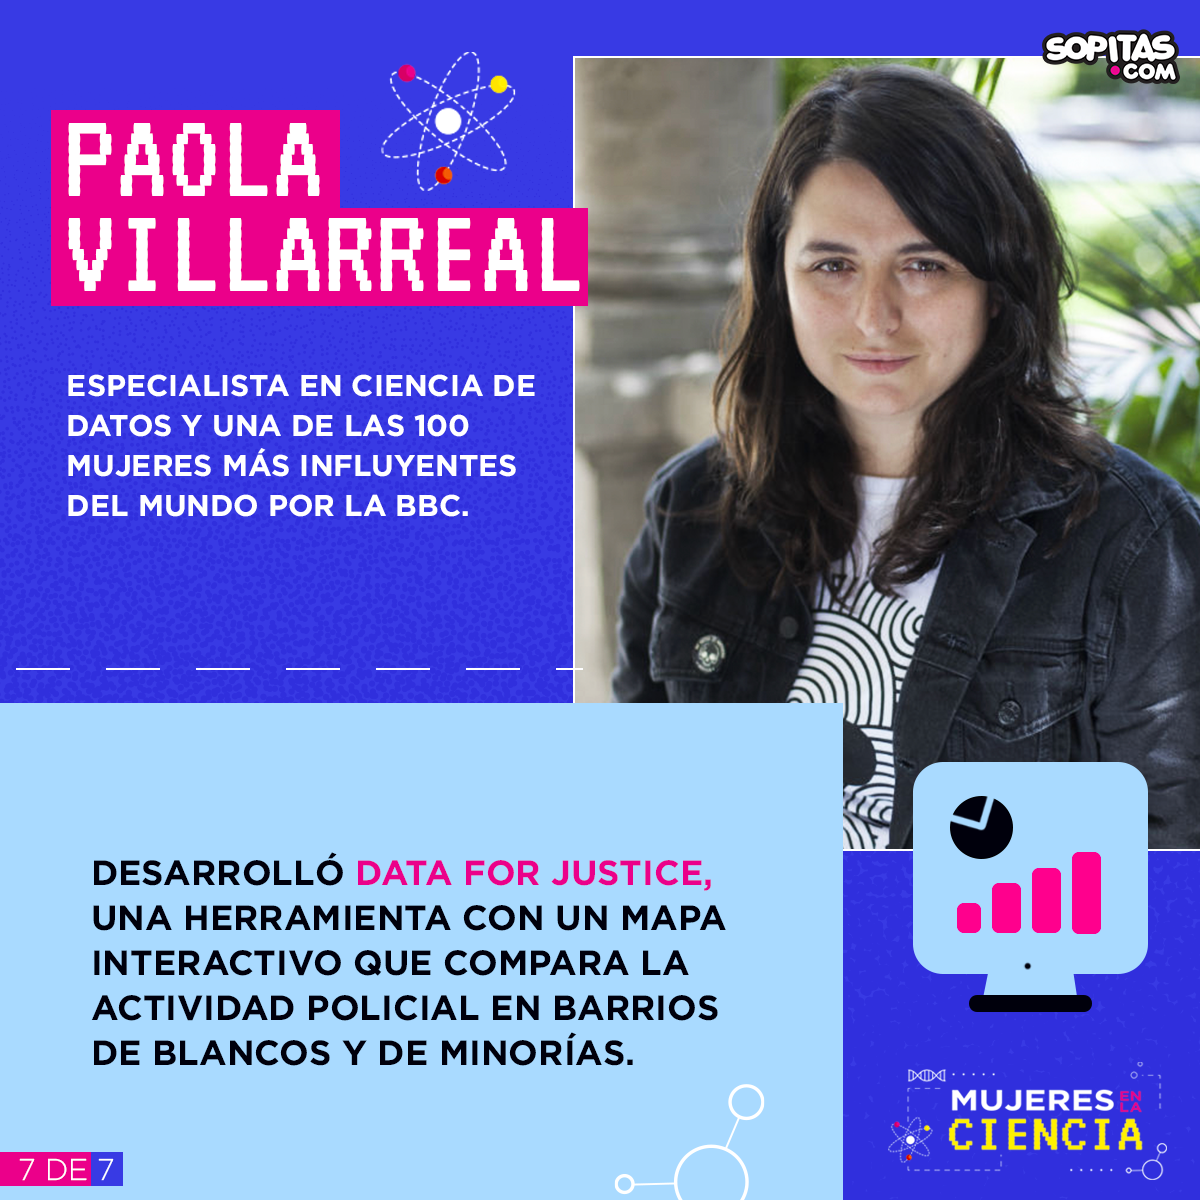 mujeres-ciencia-paola-villarreal-paw